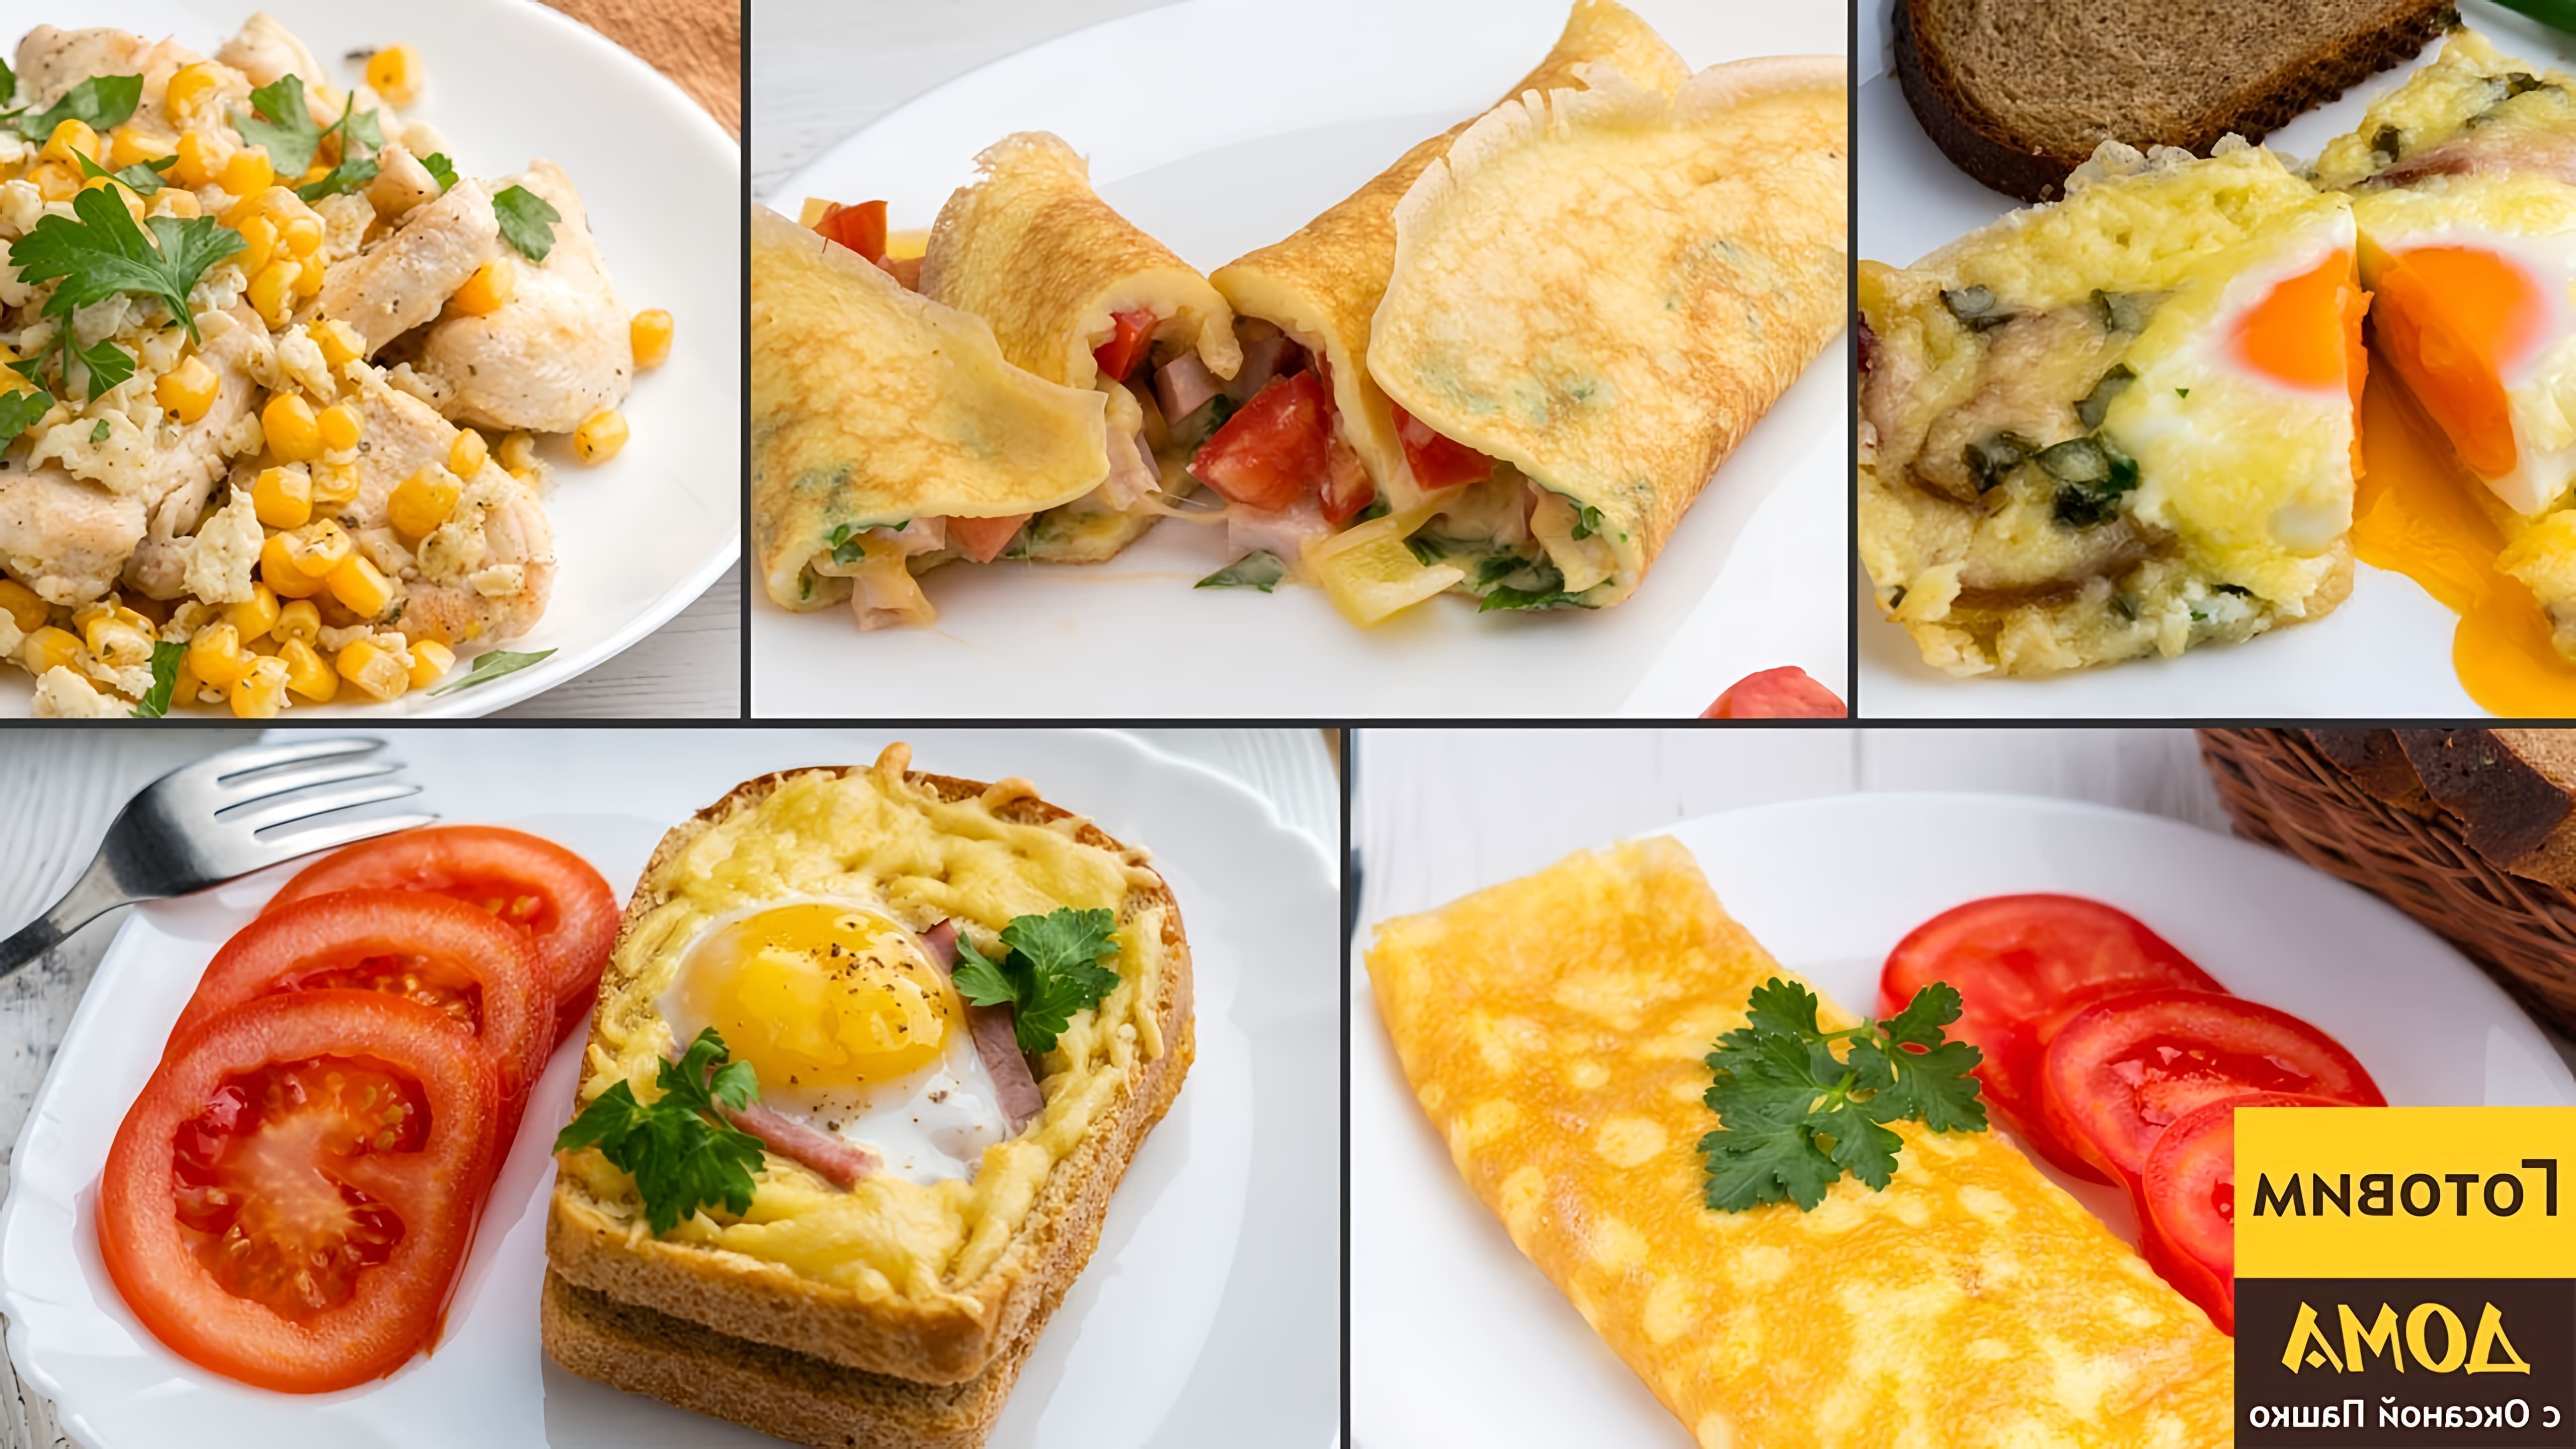 В этом видео показаны пять простых и быстрых завтраков с яйцами